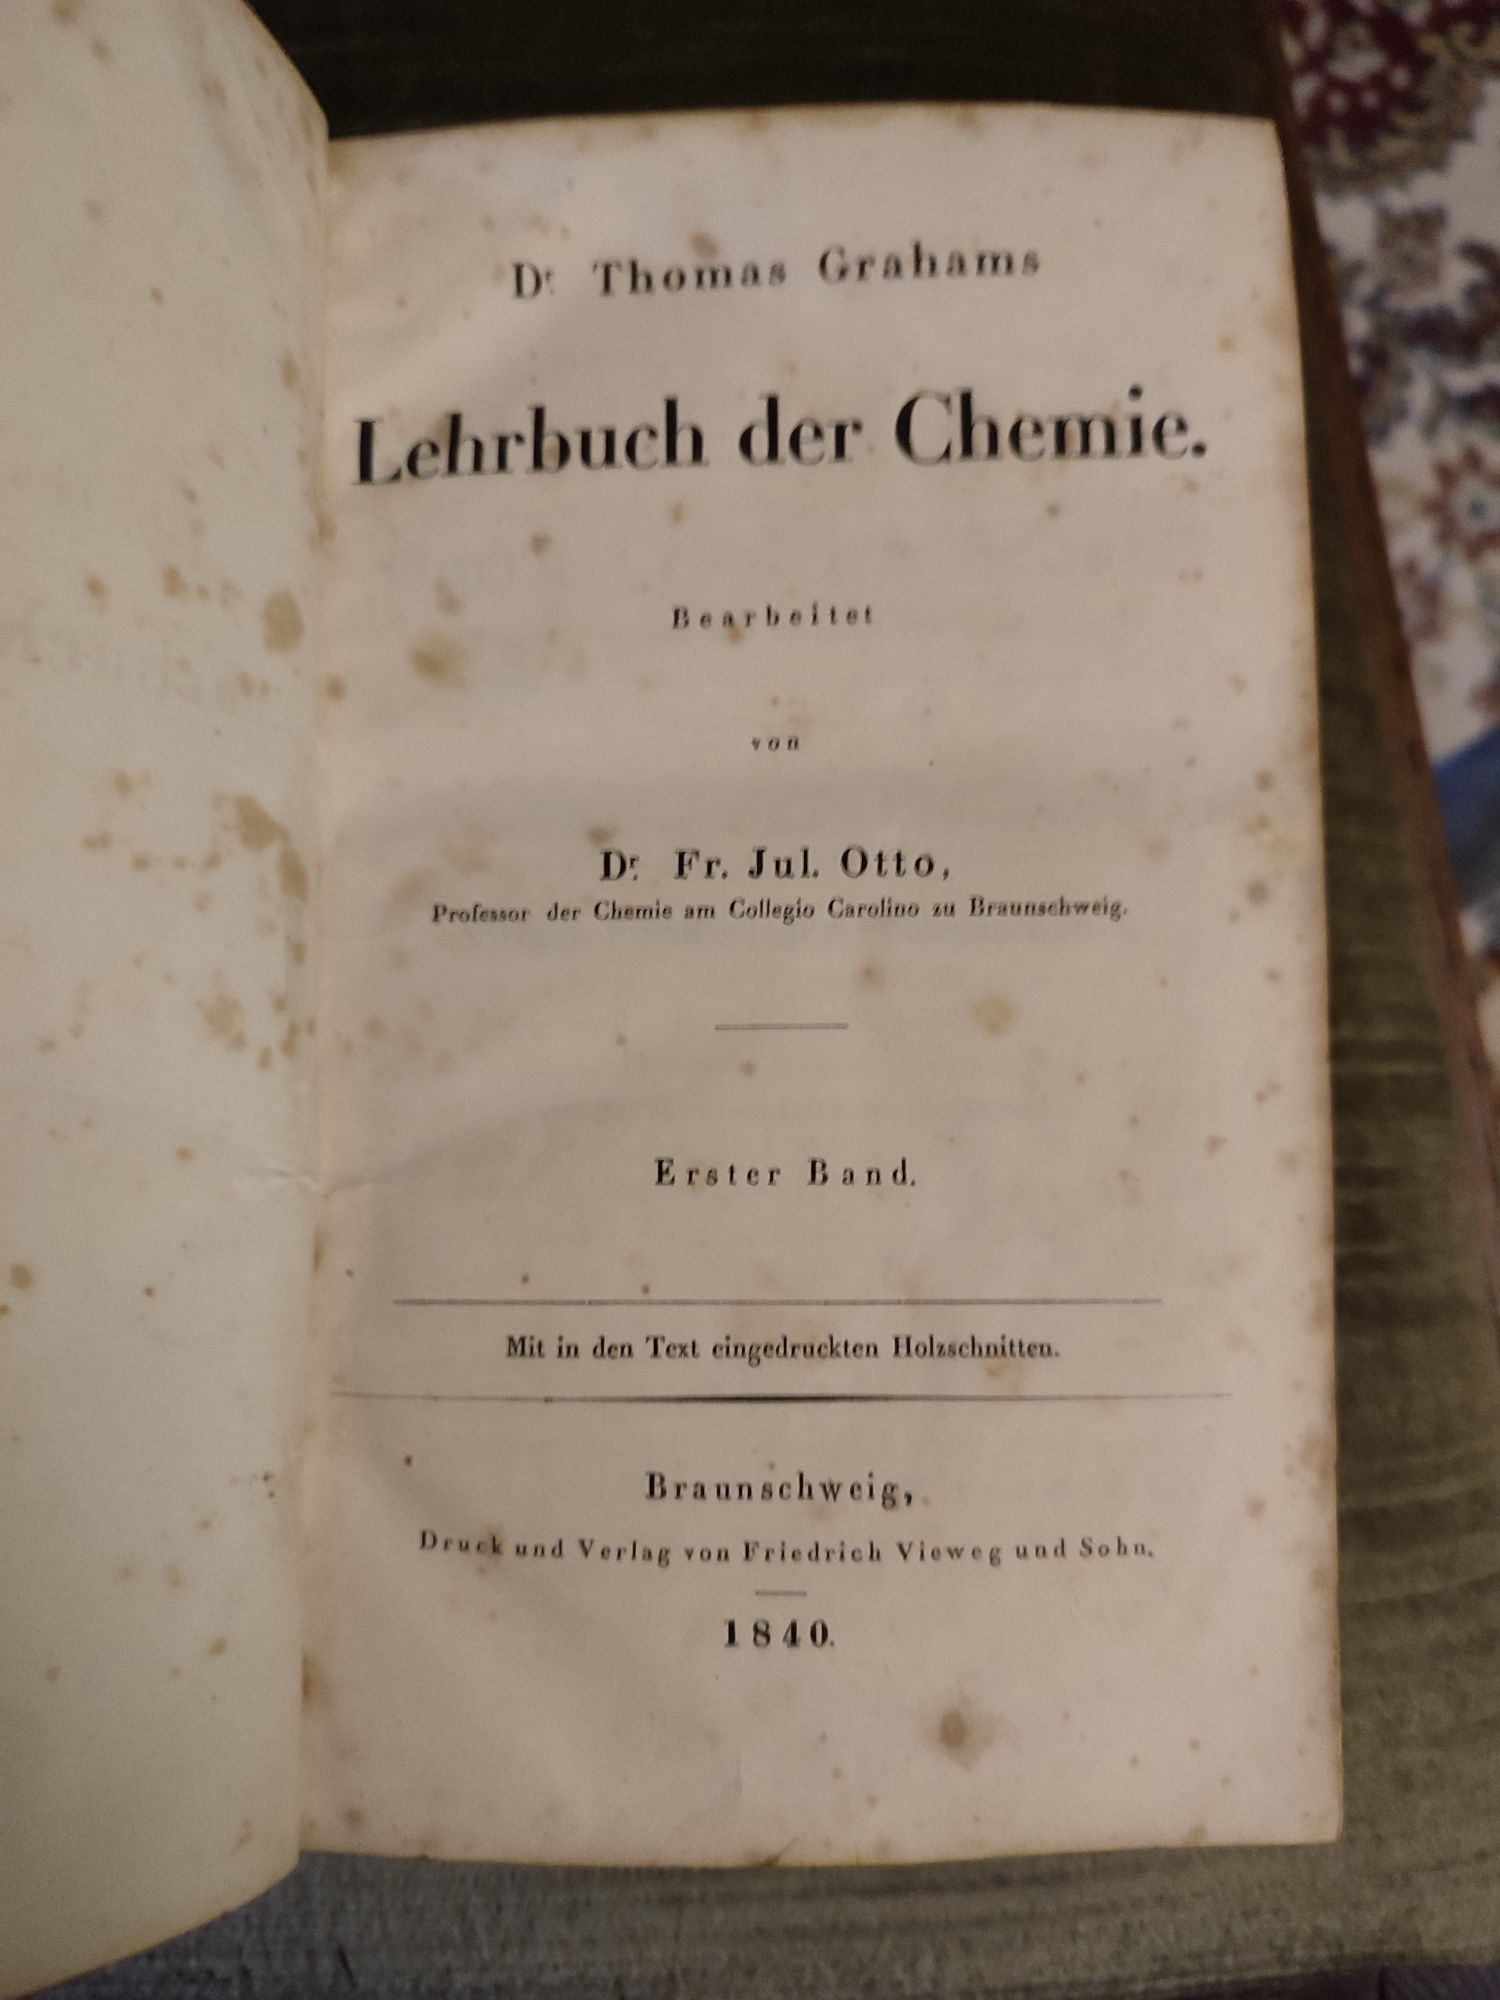 Carte veche de farmacie. Pentru colecționari. In limba germană.